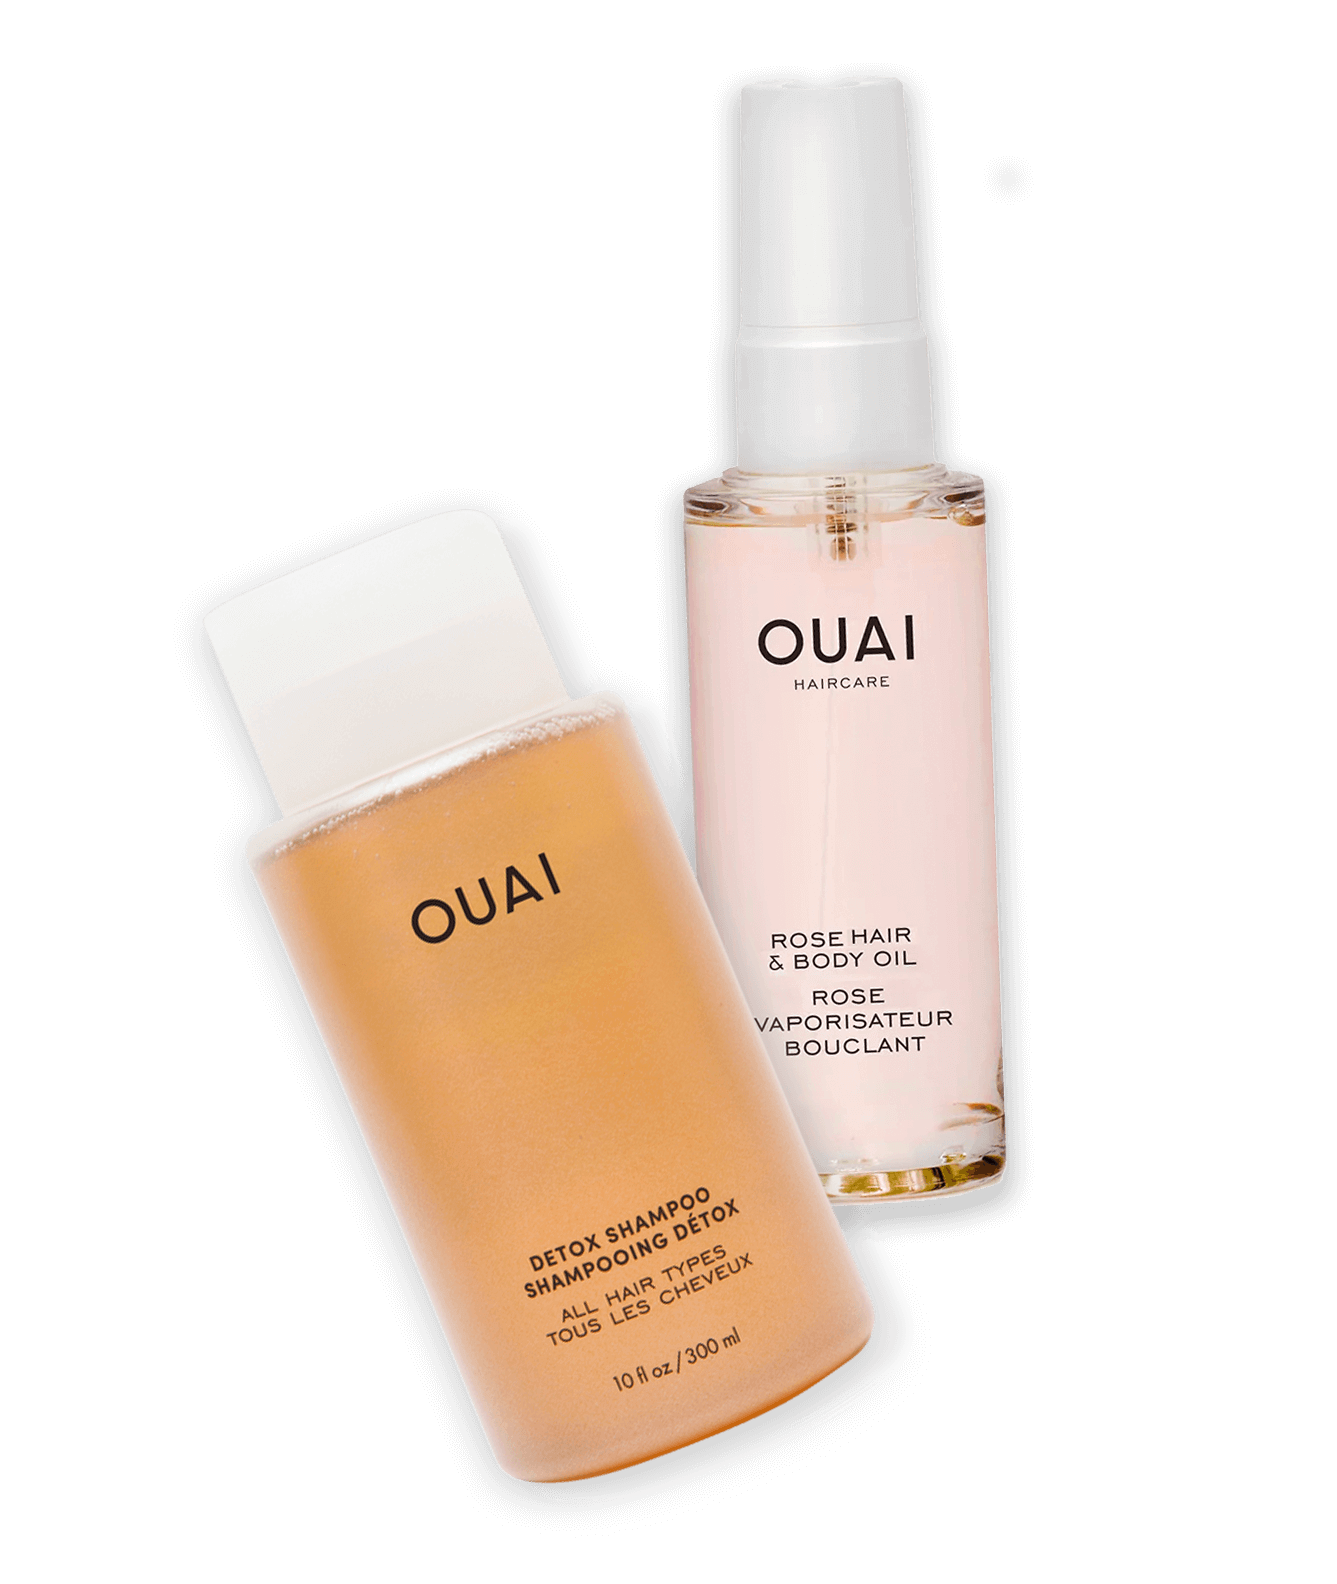 OUAI hair product bottles (inner)